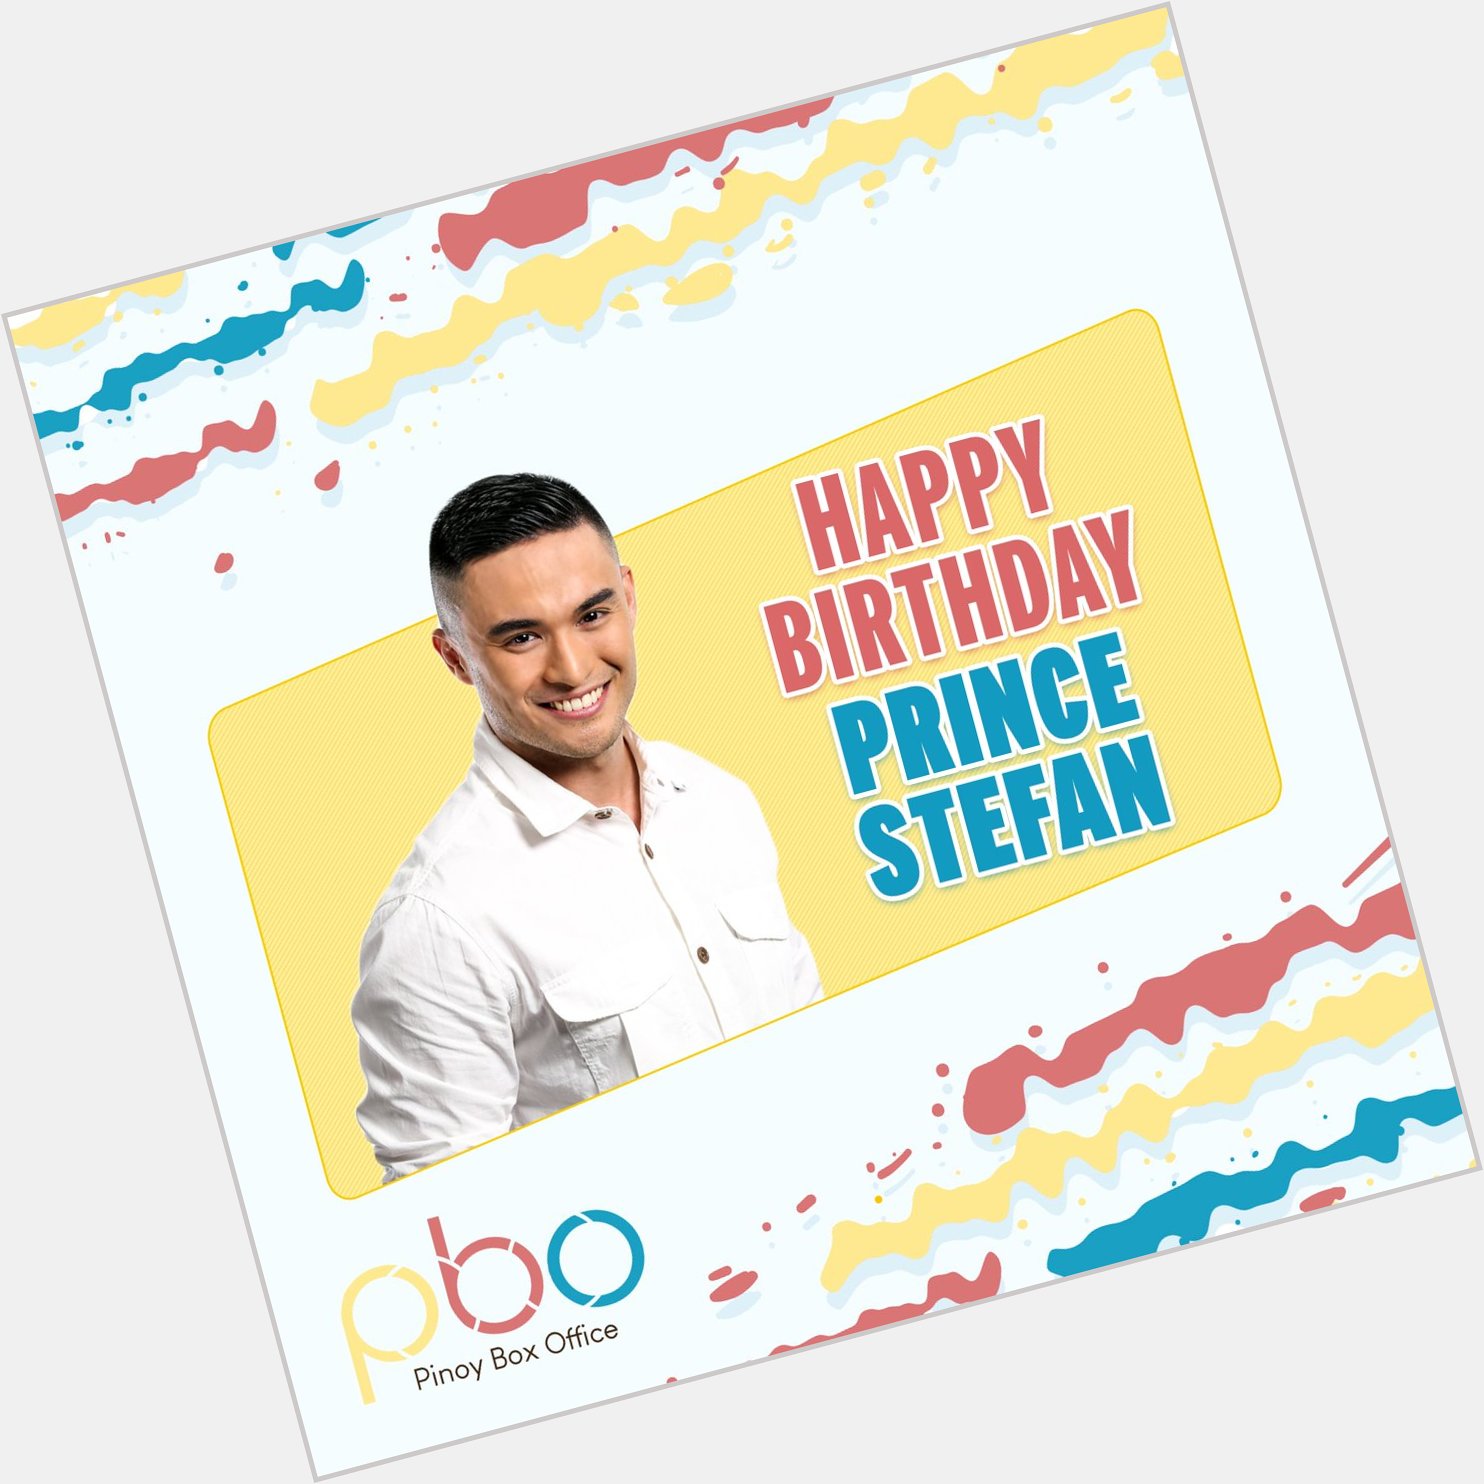 Happy birthday, Prince Stefan! Wishing you a wonderful day ahead! 